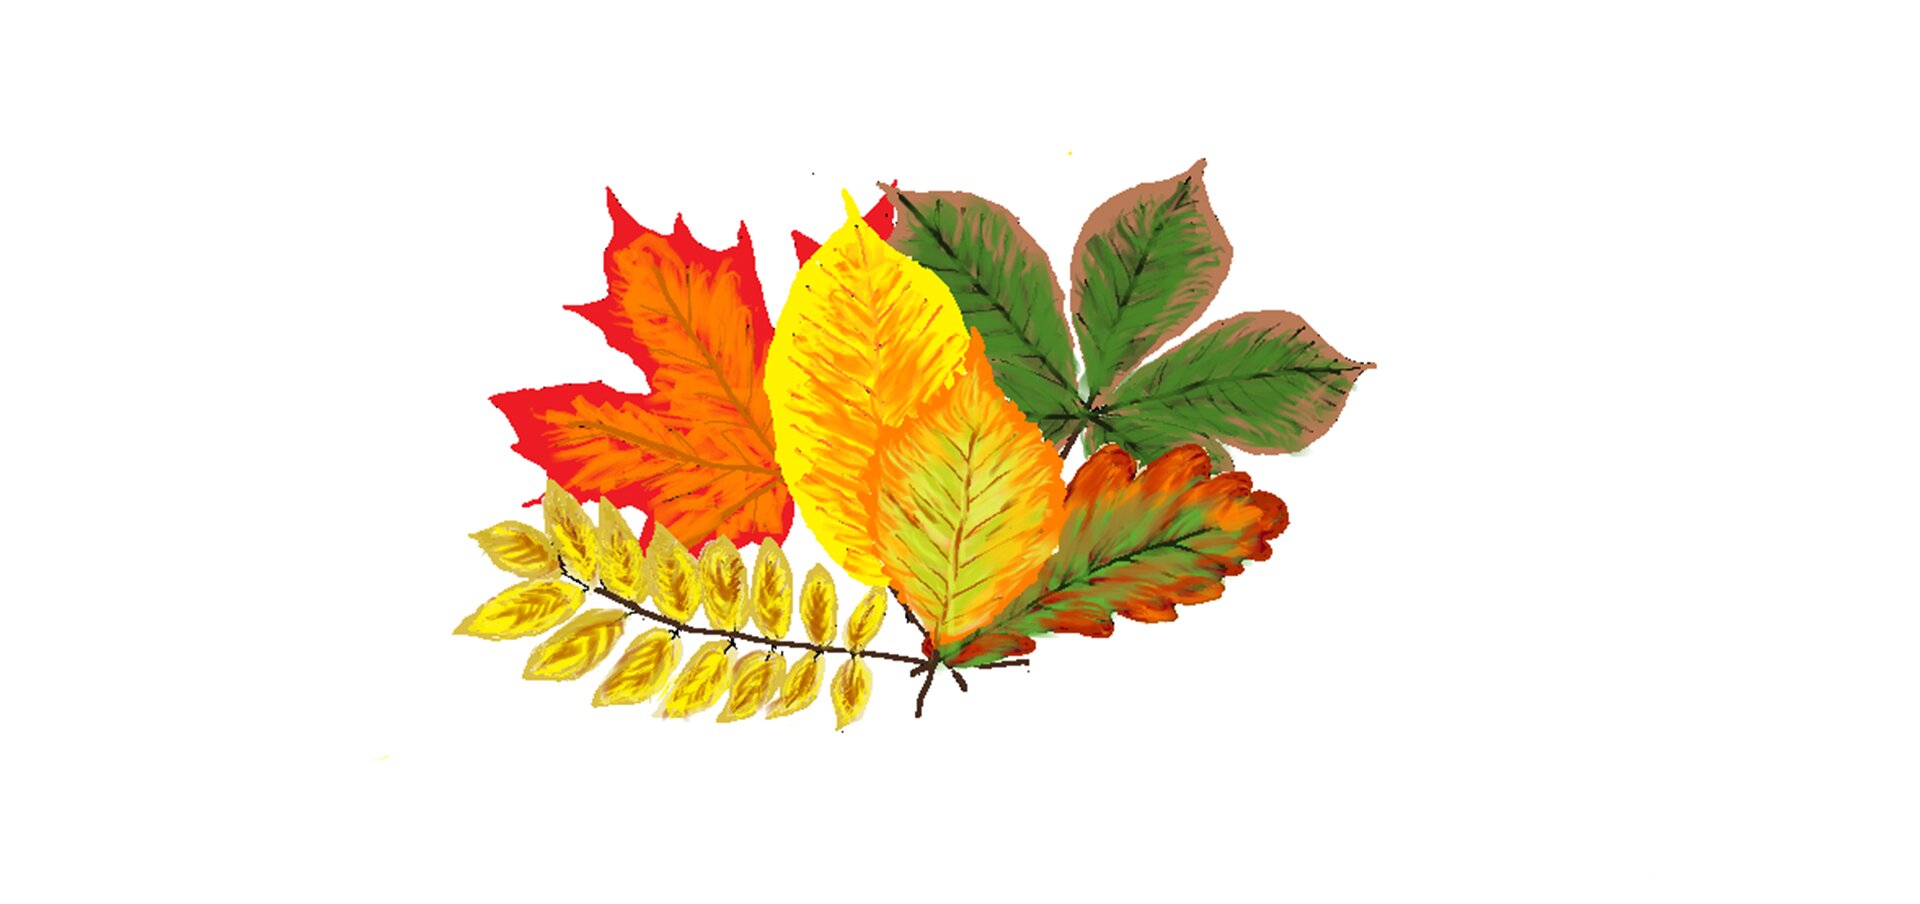 Ilustracja przedstawiająca bukiet jesiennych liści